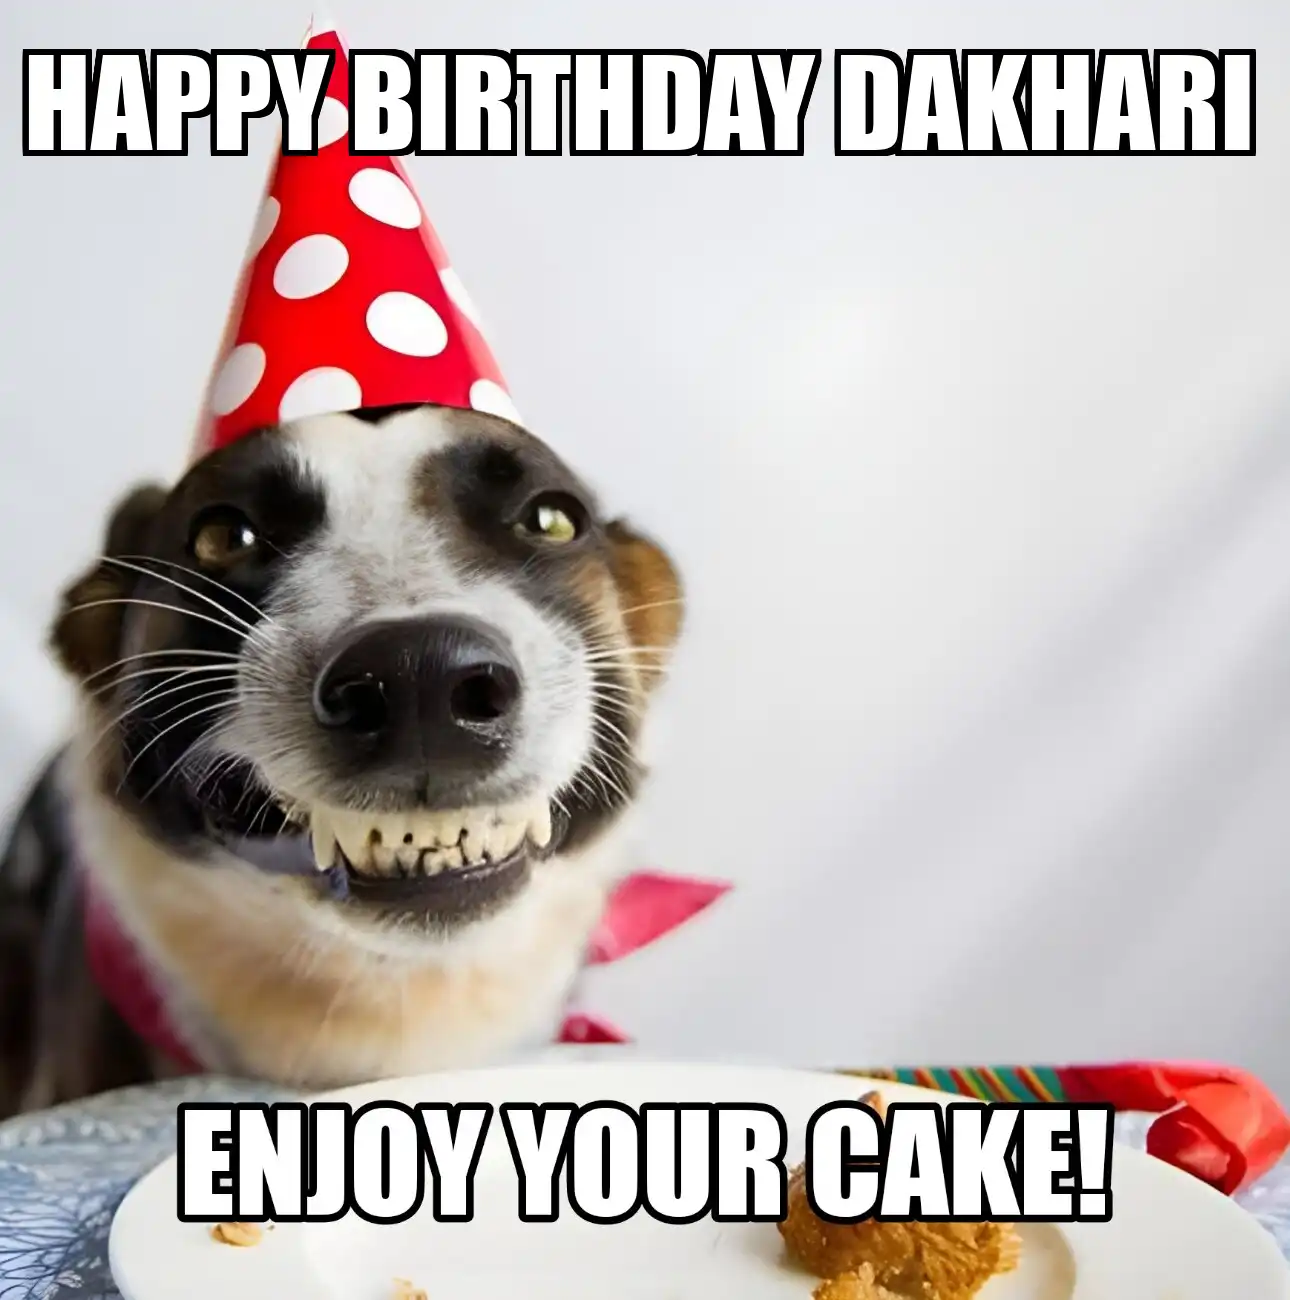 Happy Birthday Dakhari Enjoy Your Cake Dog Meme